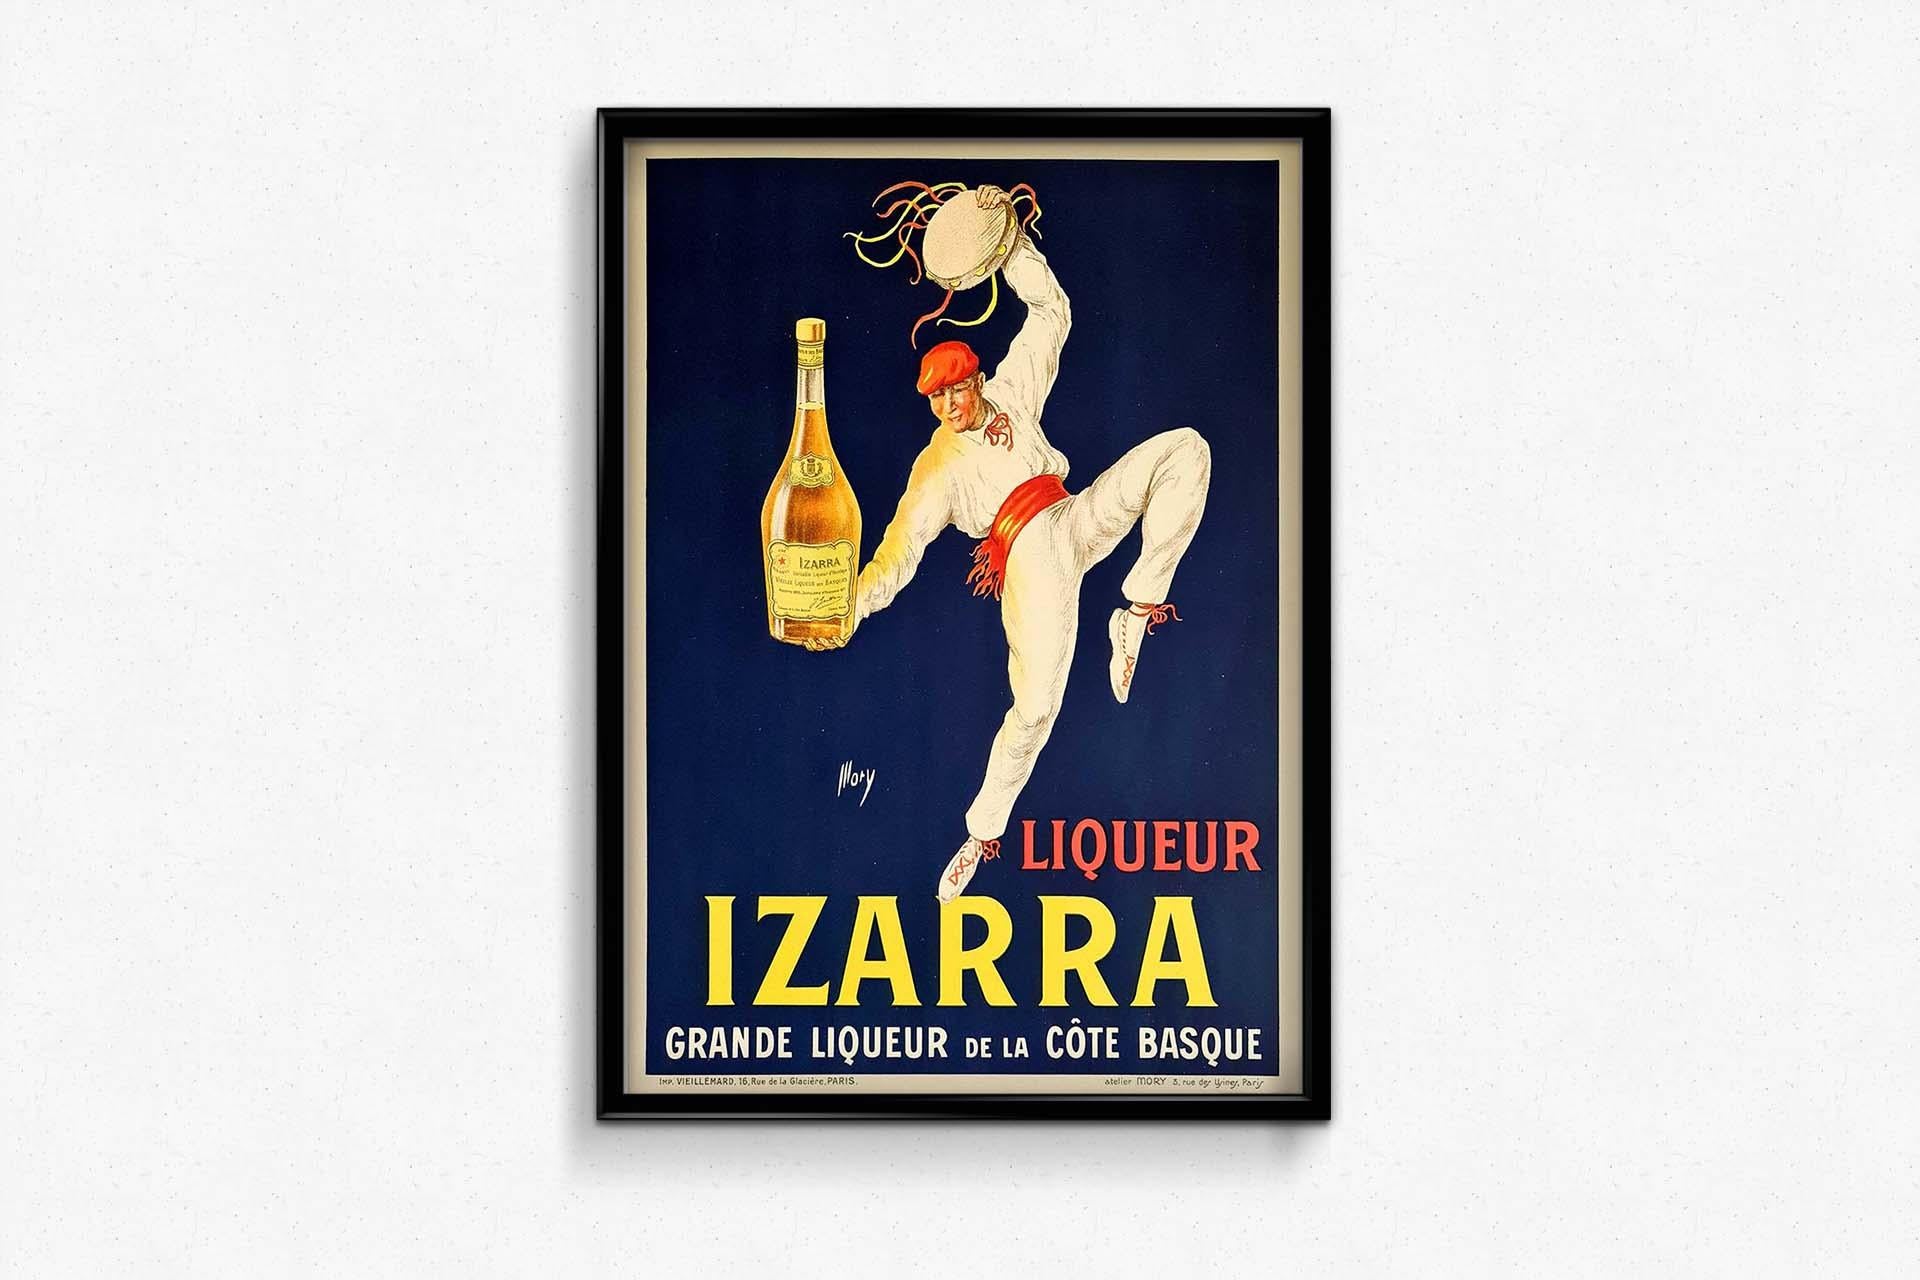 izarra liqueur where to buy